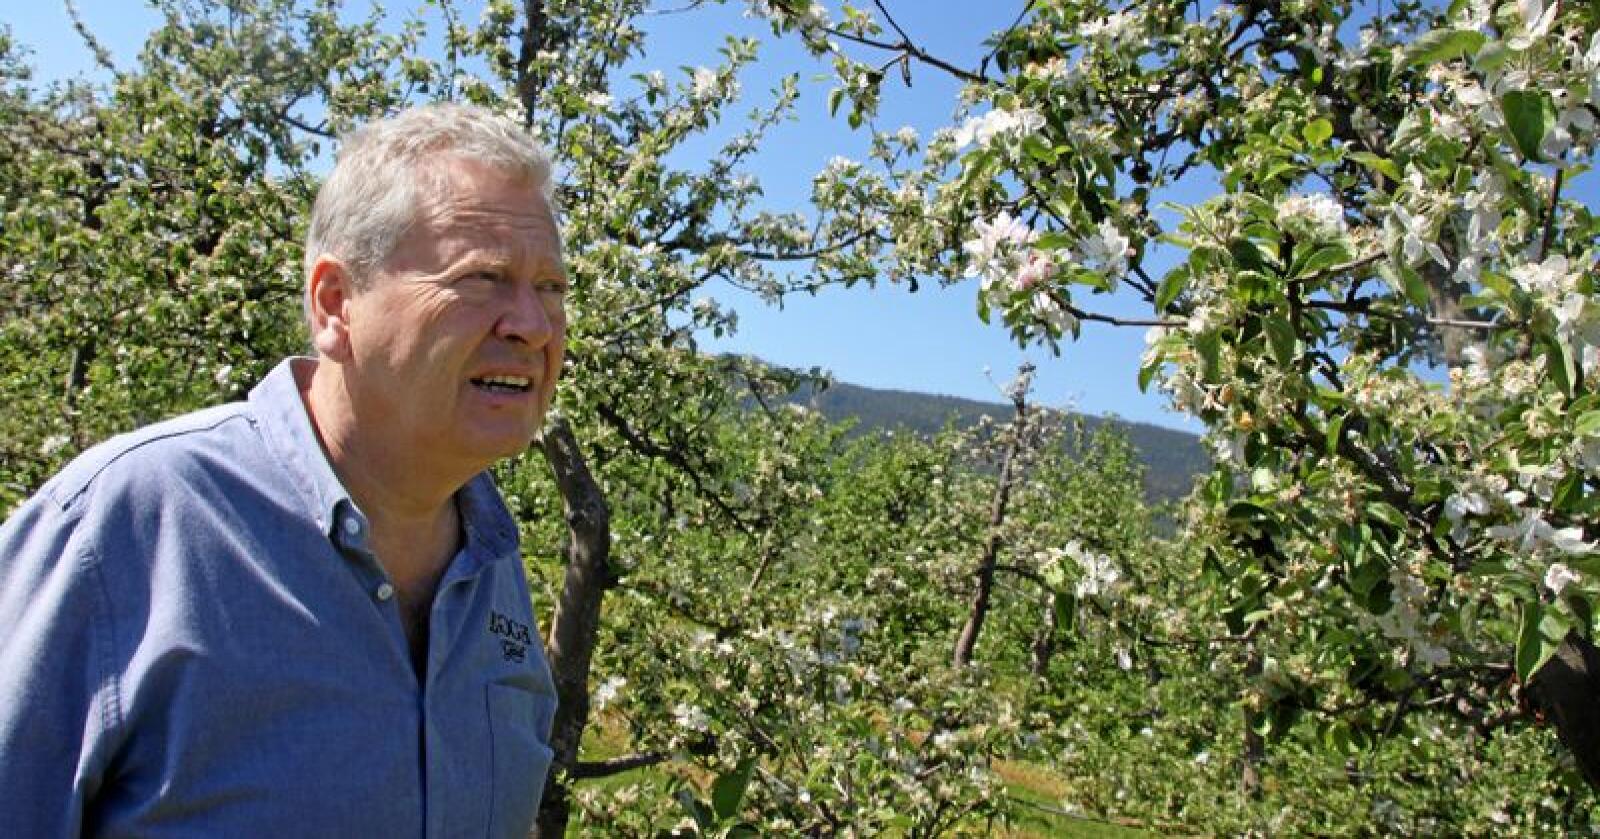 Marius Egge er produsent av epler, eplecider, eplemost i Lier i Buskerud. Mandag får bedriften besøk av  SMB-patruljen, som skal hjelpe bedrifter i møte med det offentlige. Foto: Lars Bilit Hagen 